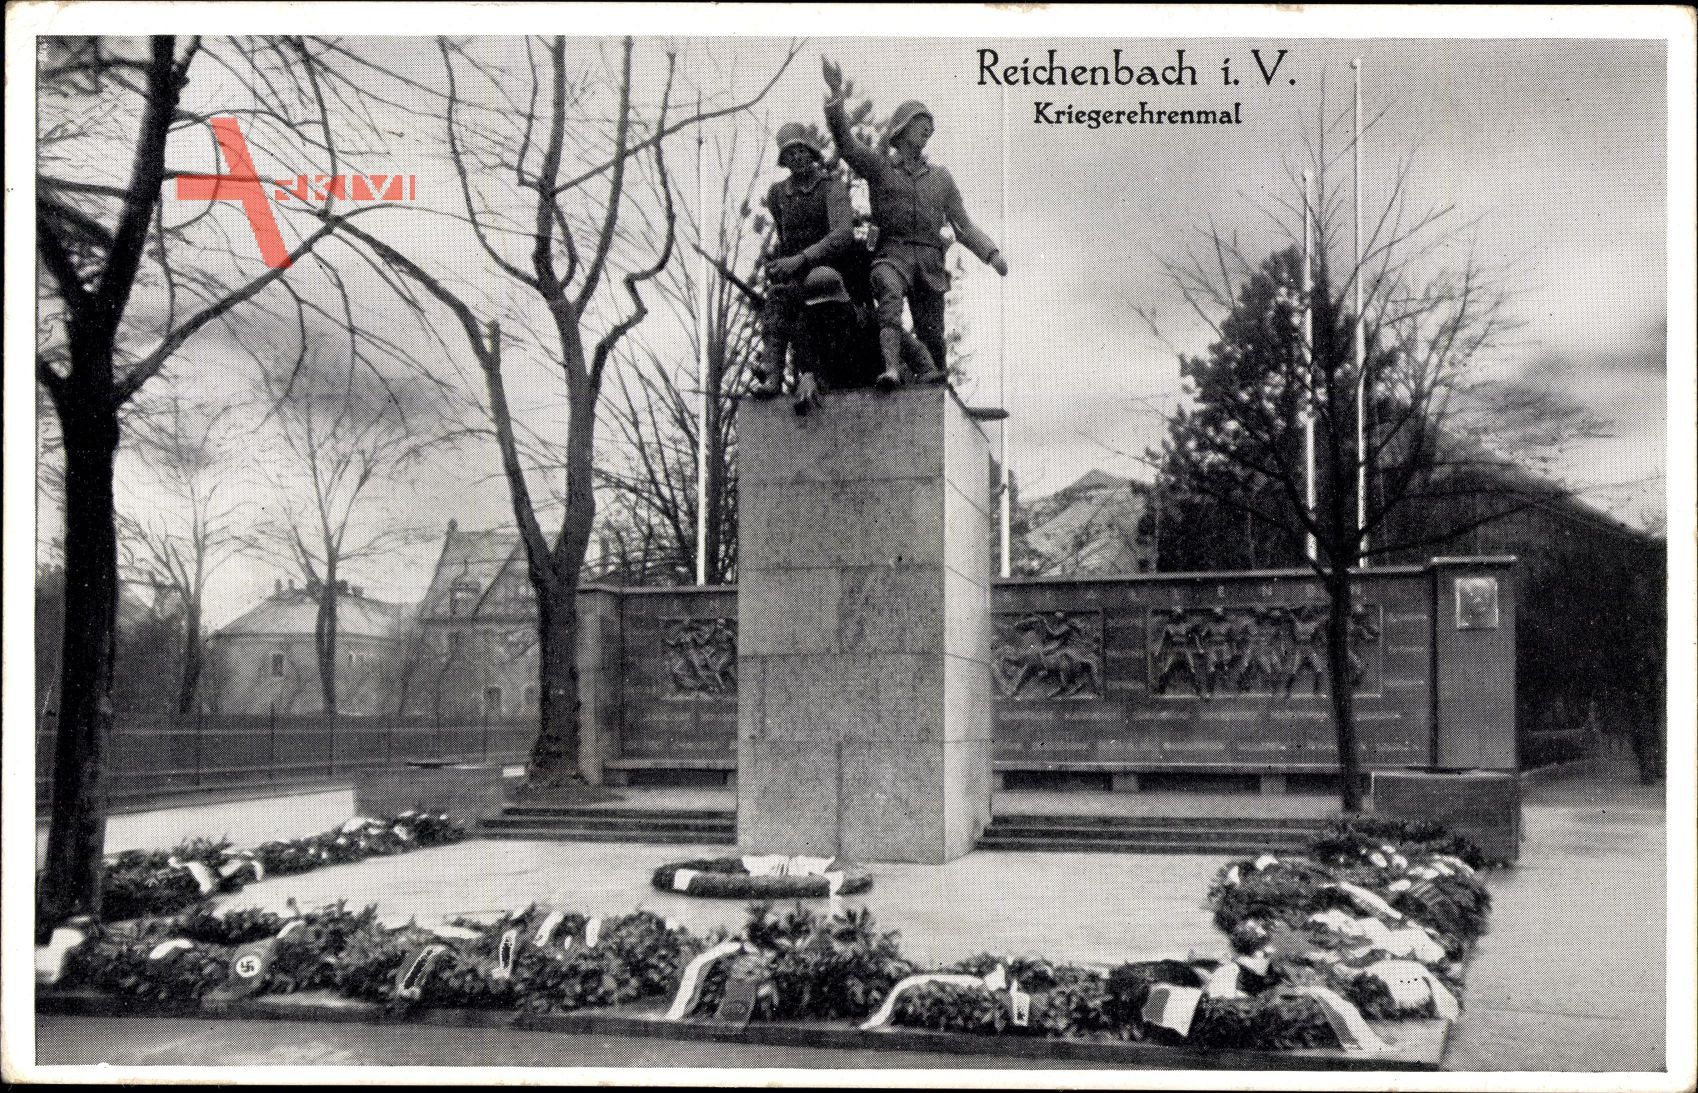 Reichenbach i V, Blick auf das Kriegerehrenmal, Blumenkränze